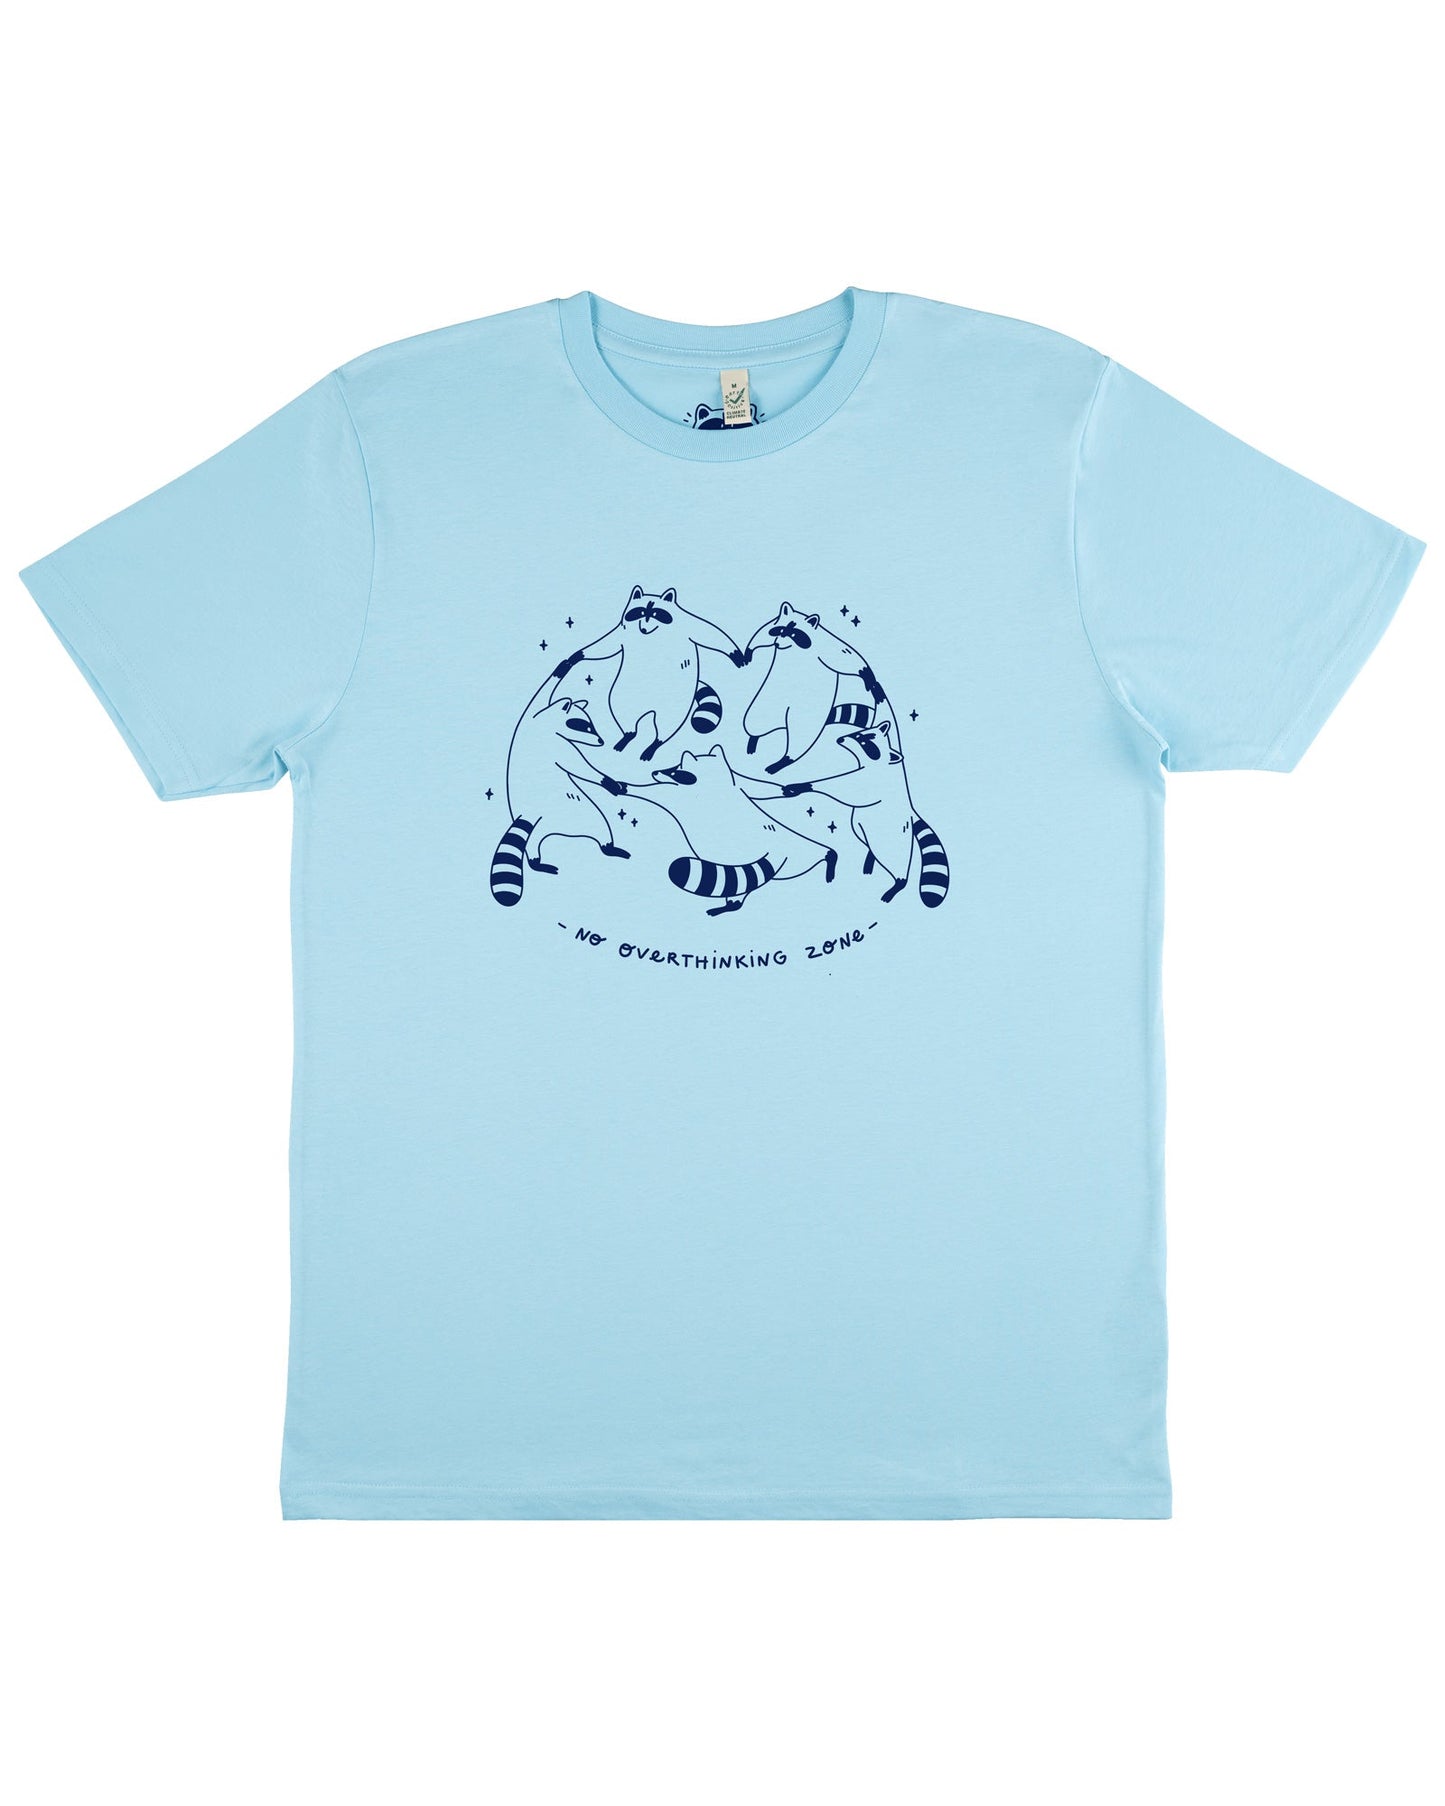 Raccoon Dance - Light Blue T-shirt